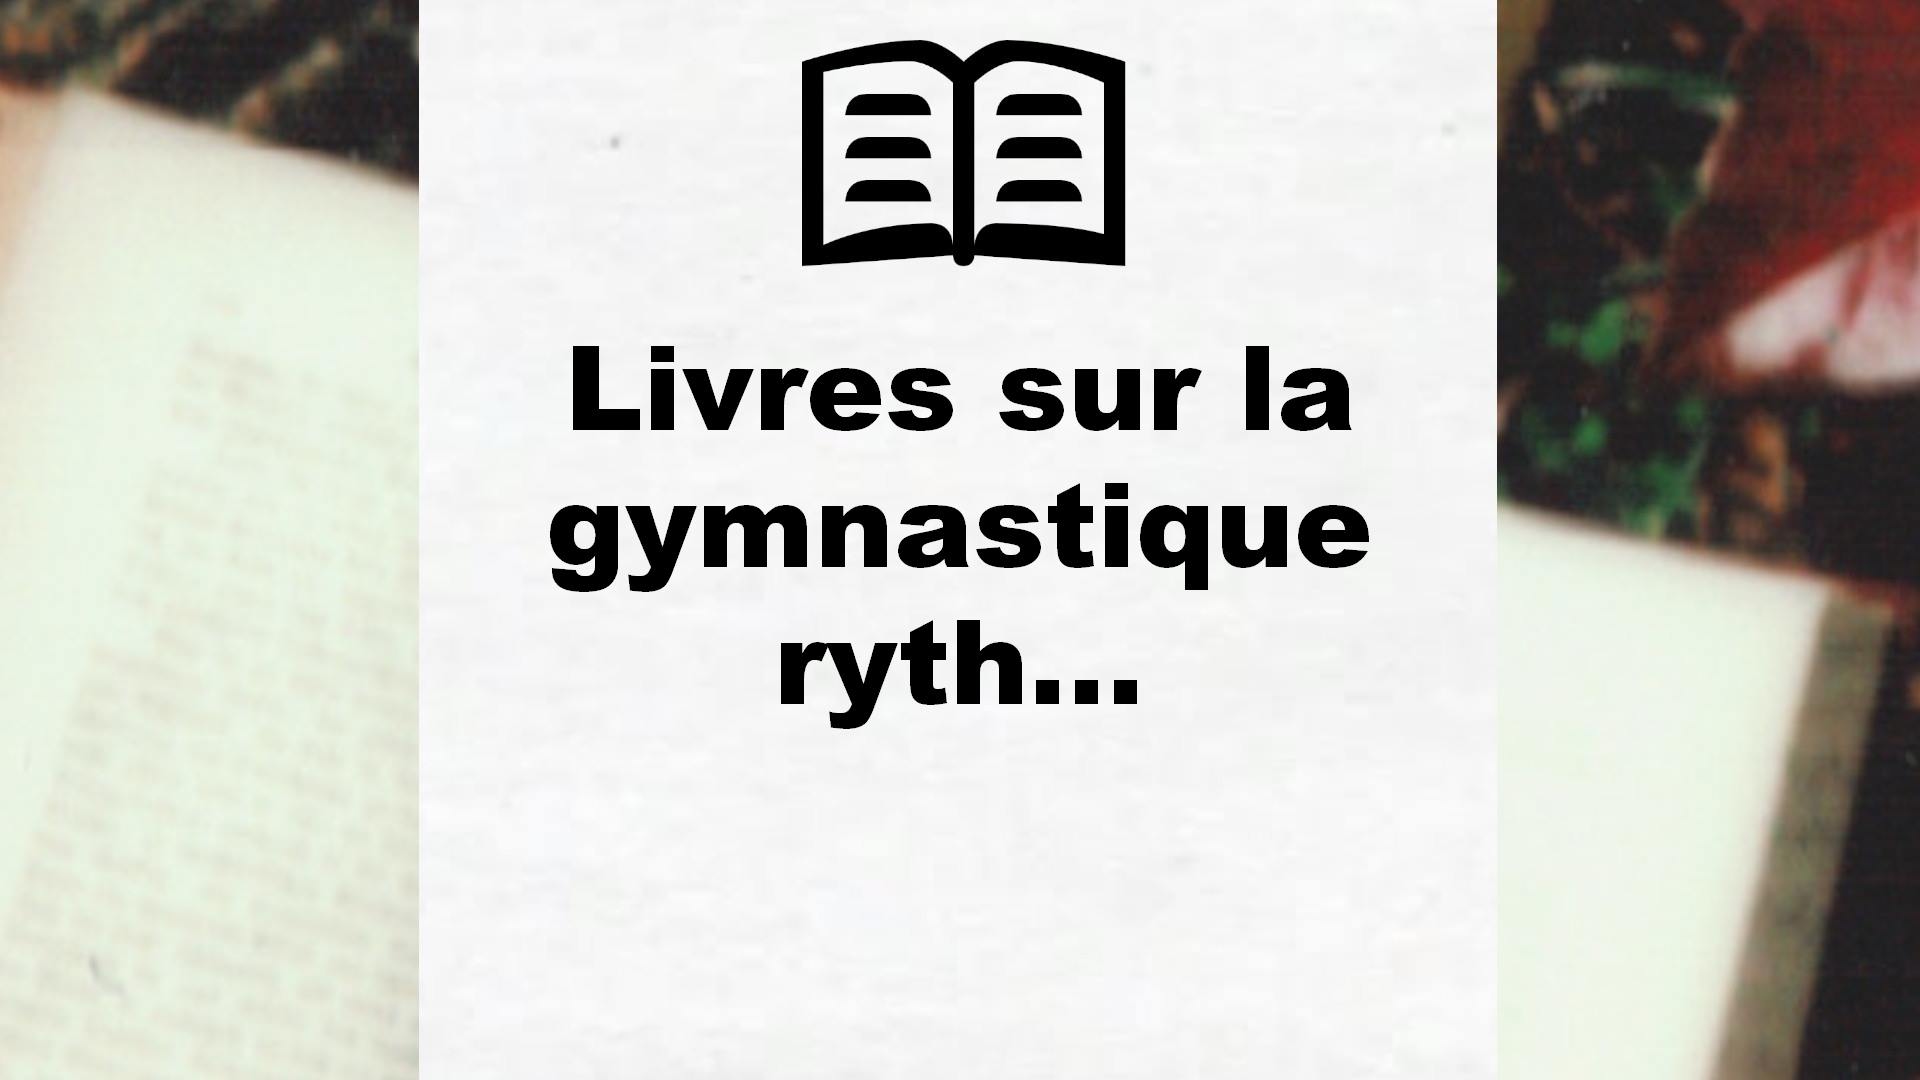 Livres sur la gymnastique rythmique